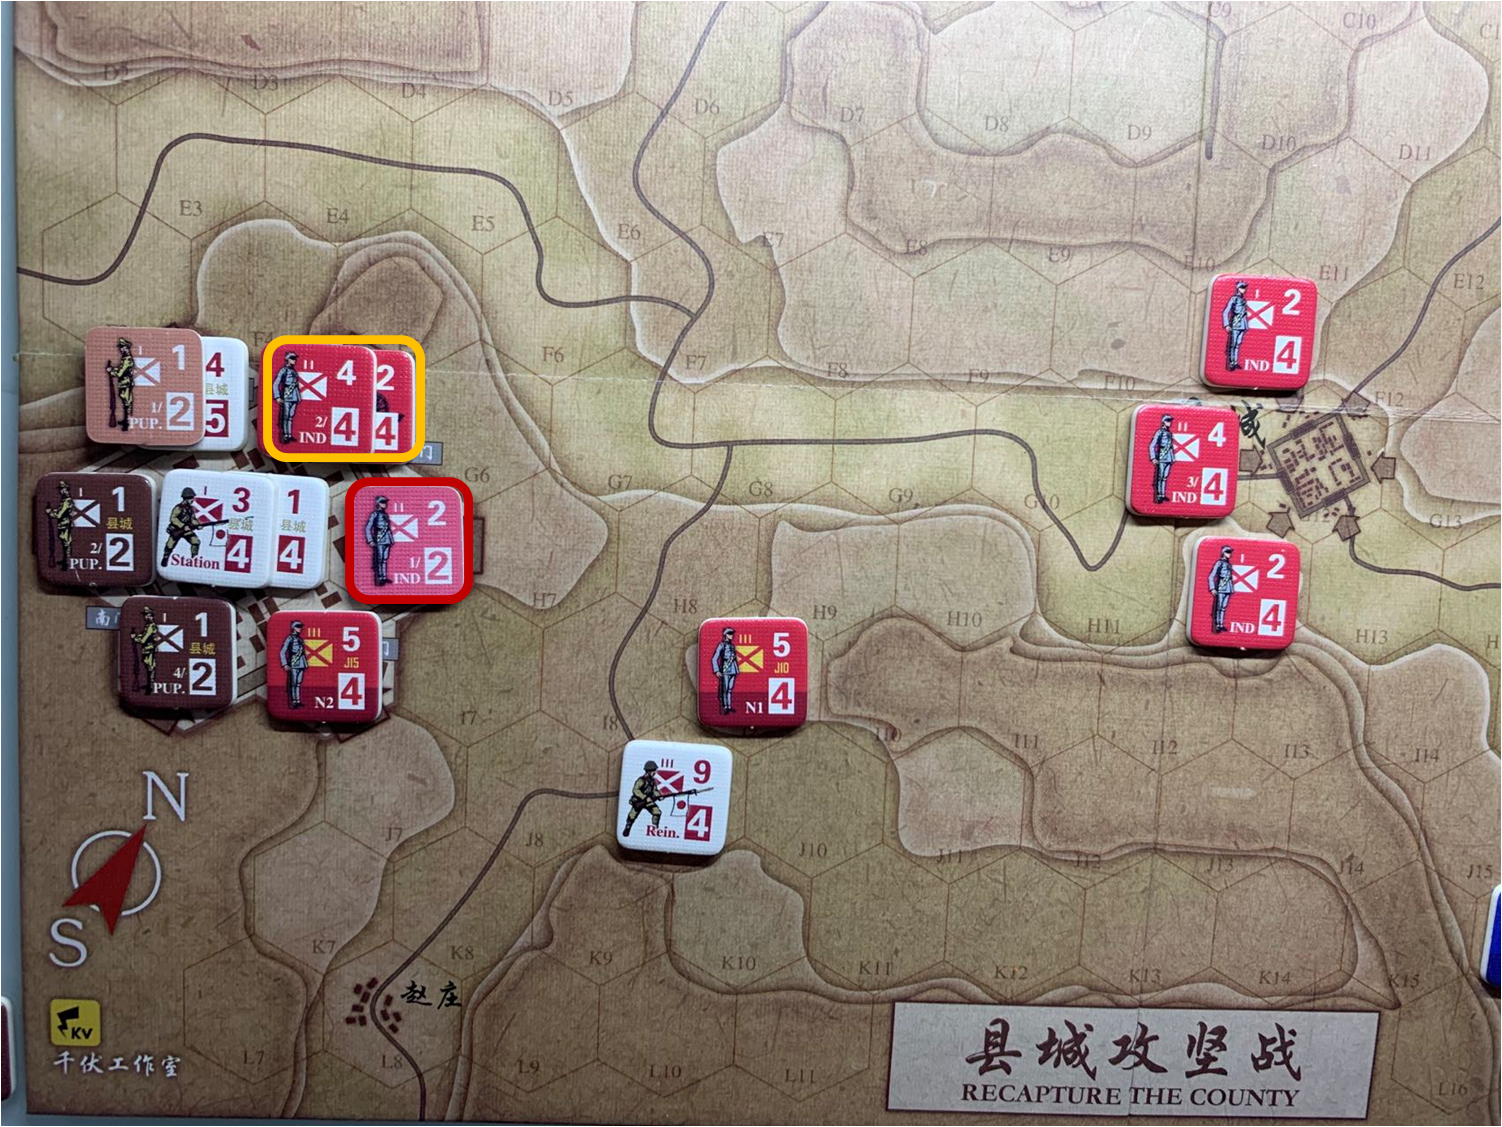 第二回合縣城內共軍獨立團部隊對於移動命令1與命令2的執行結果